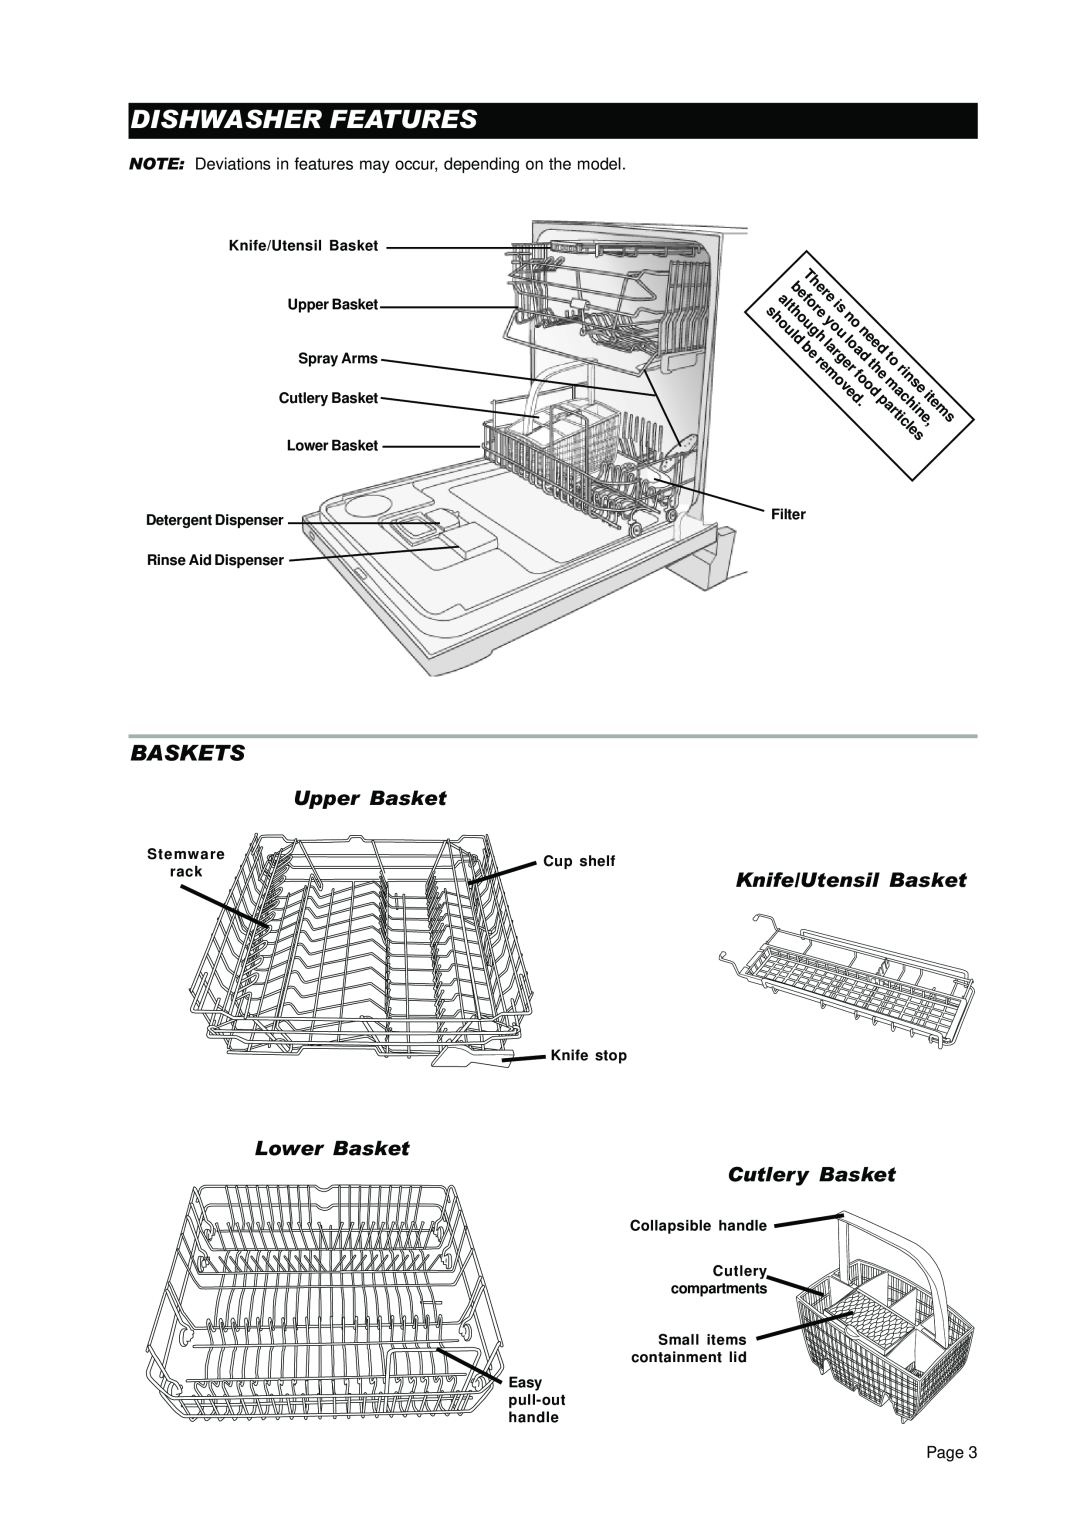 Asko D3450 Dishwasher Features, Baskets, Upper Basket, Knife/Utensil Basket, Lower Basket Cutlery Basket, before, rinse 